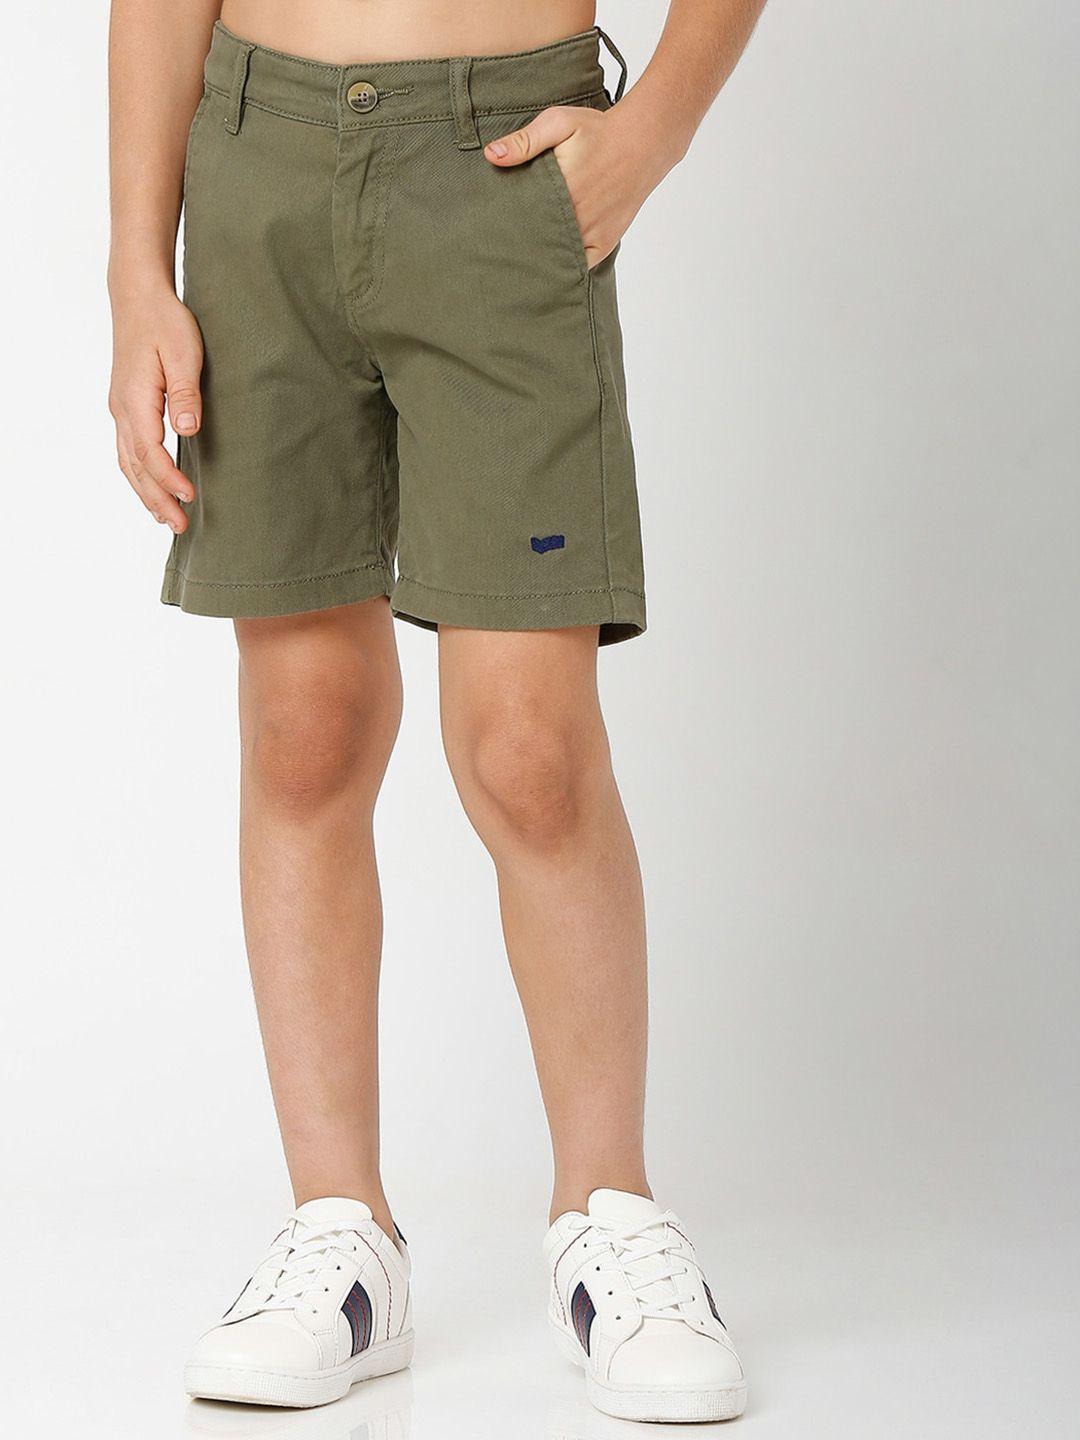 gas boys green slim fit shorts